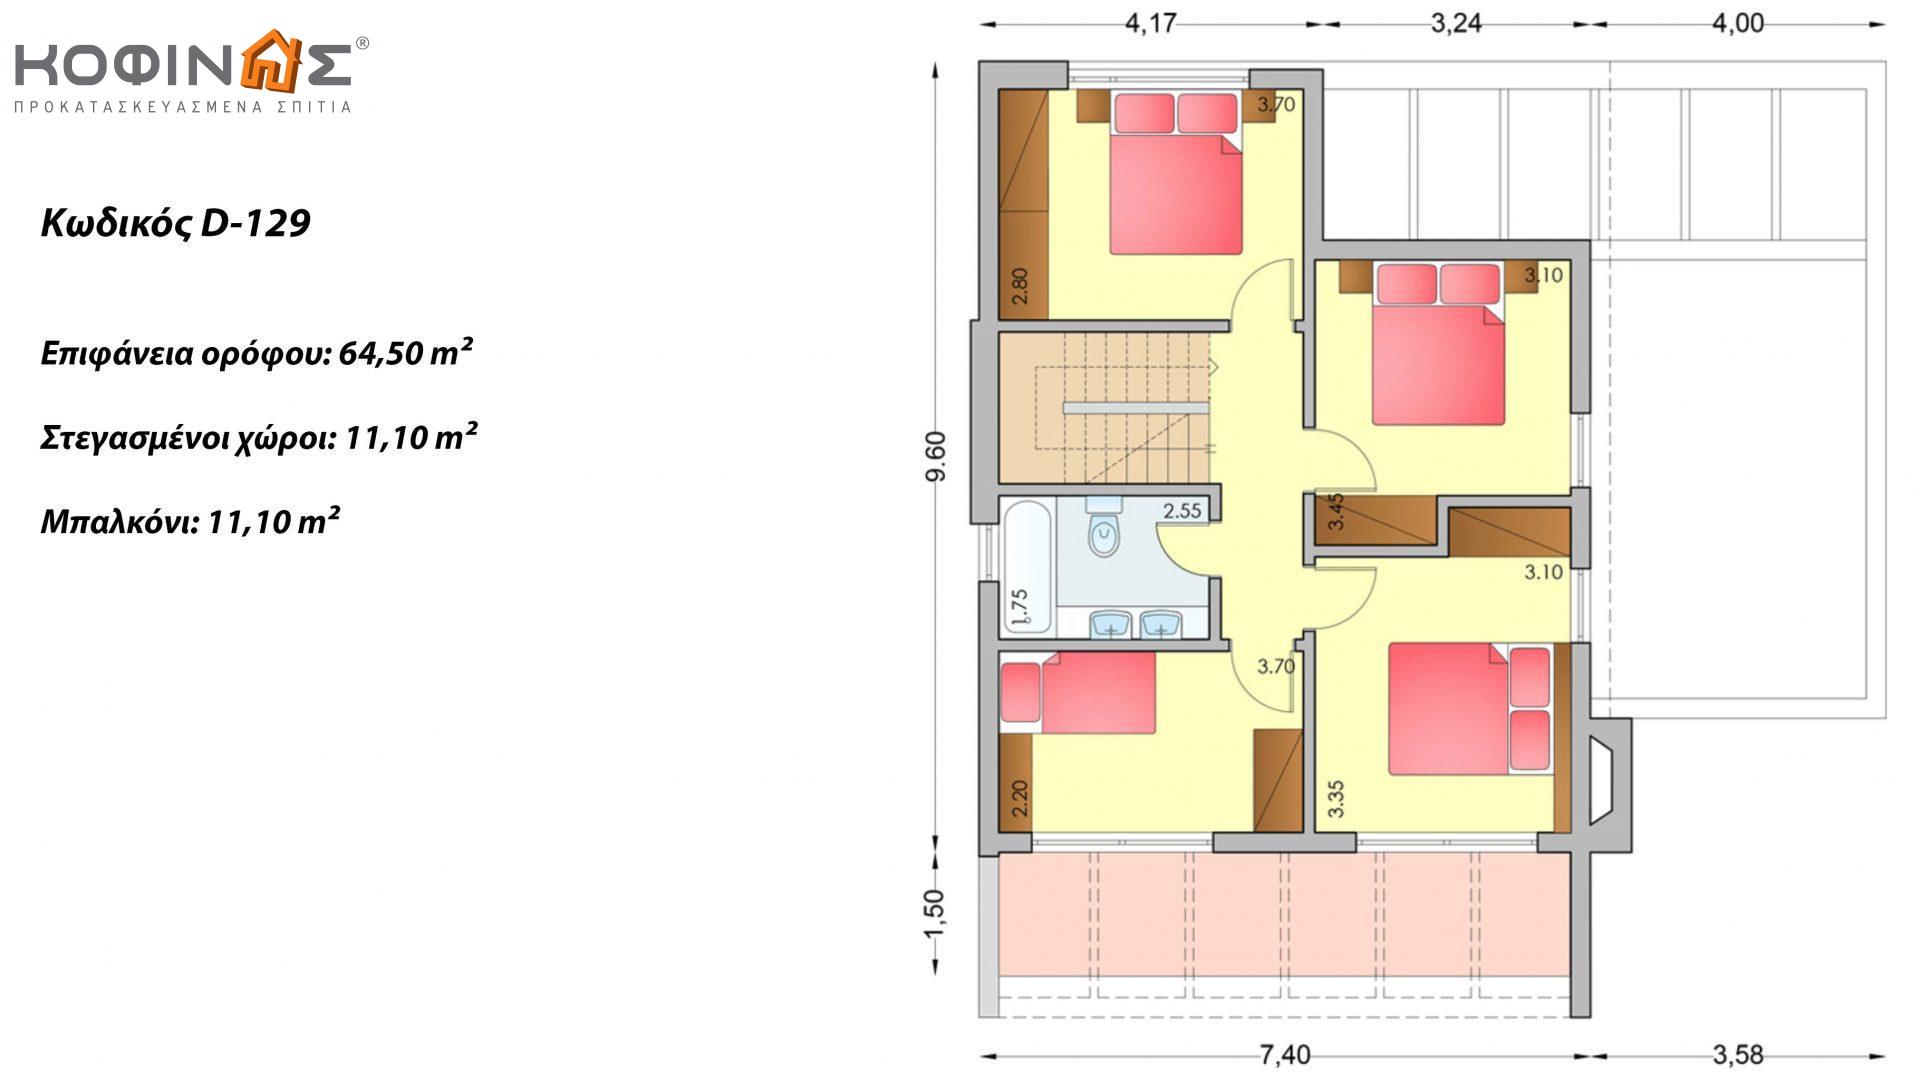 Διώροφη Κατοικία D-129, συνολικής επιφάνειας 129,50 τ.μ., +Γκαράζ 20.77 m²(=150.27 m²),συνολική επιφάνεια στεγασμένων χώρων 40.70 τ.μ., μπαλκόνια 11.10 τ.μ.